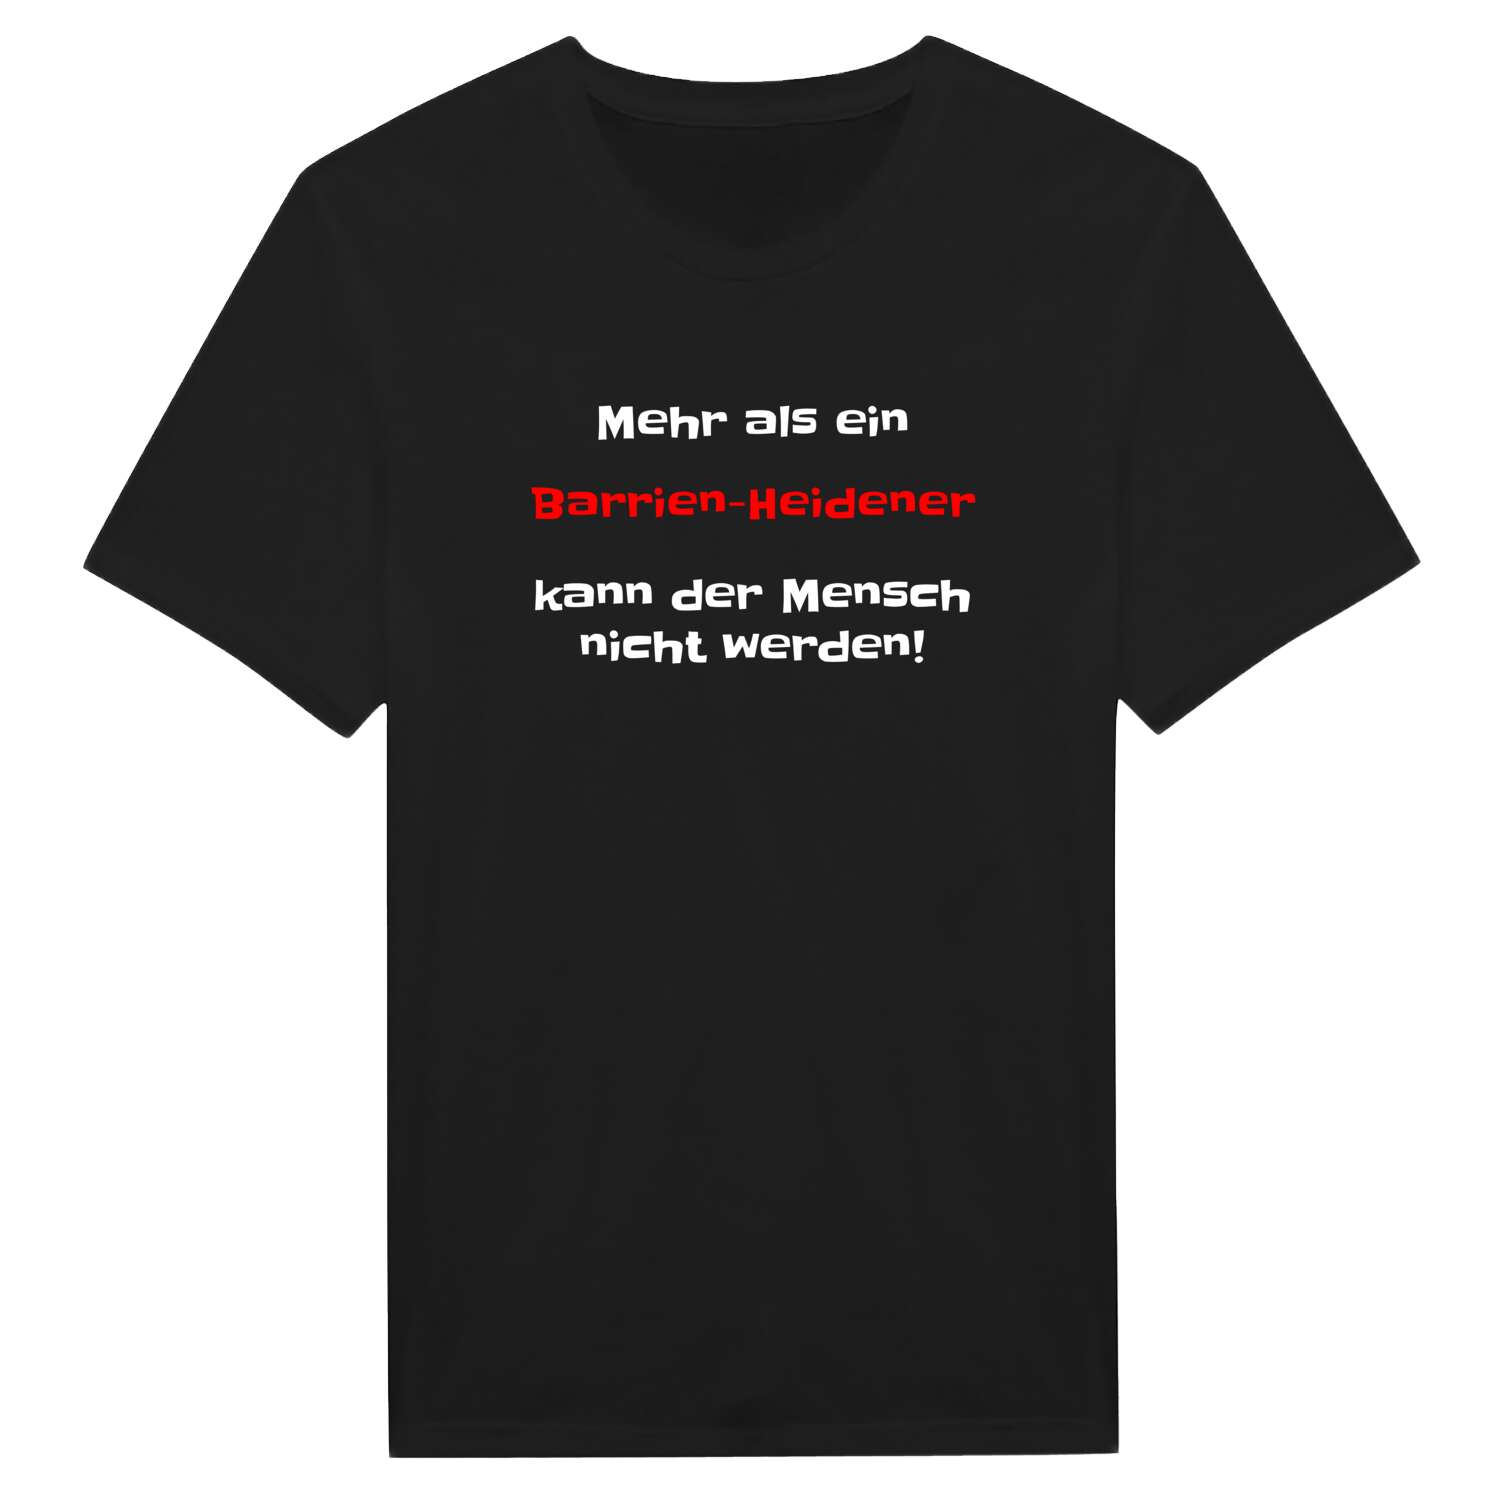 Barrien-Heide T-Shirt »Mehr als ein«